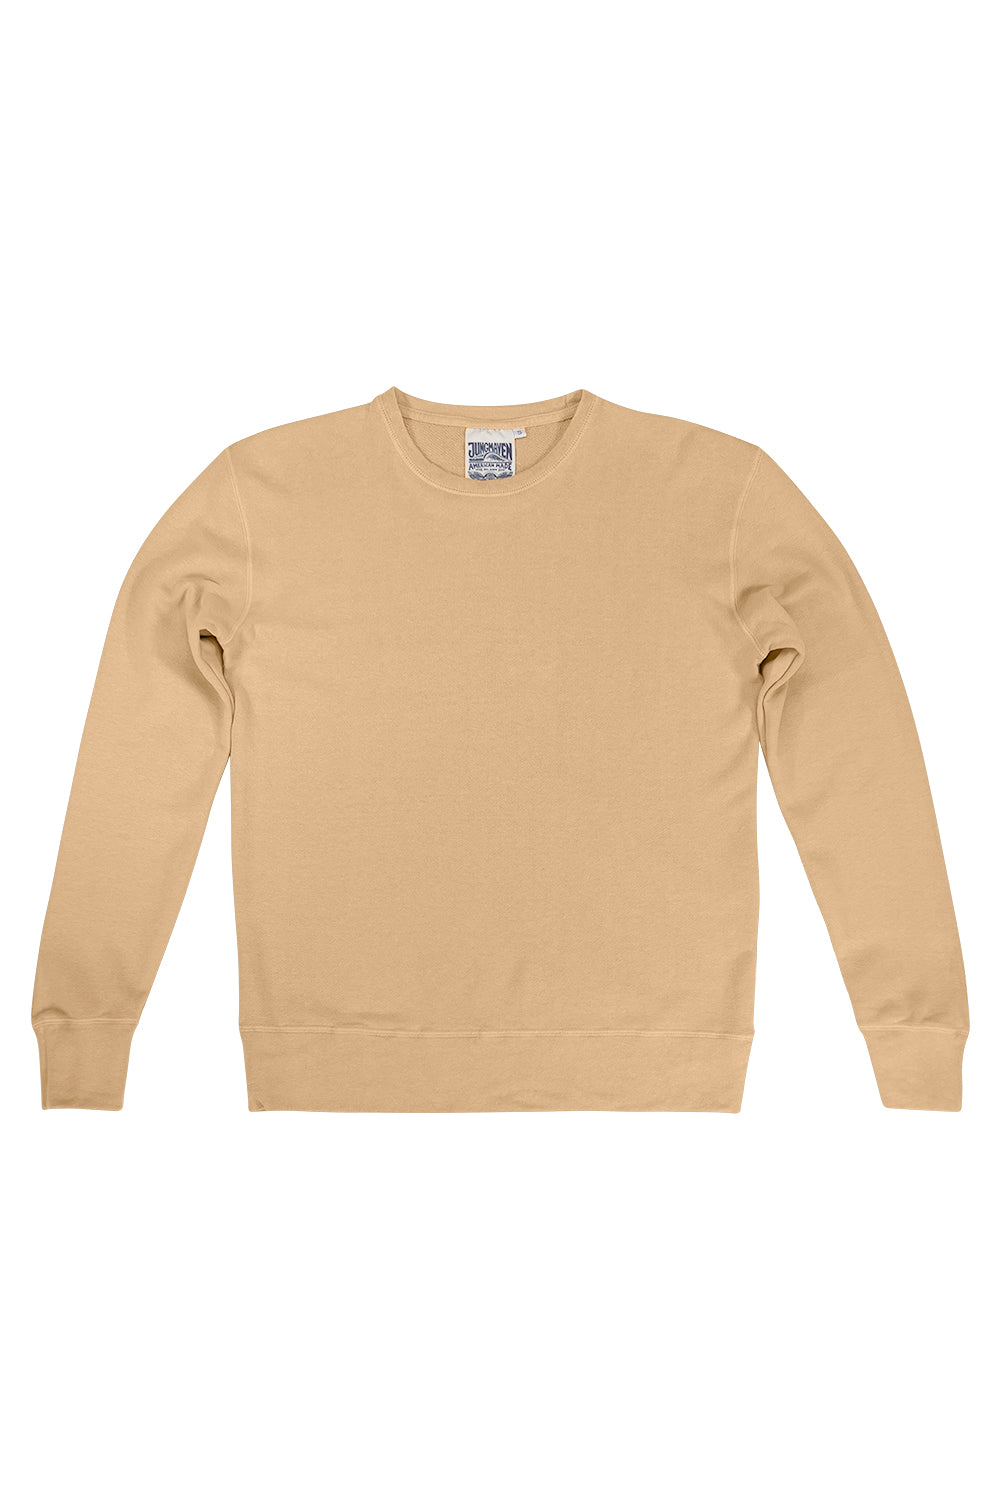 Tahoe Sweatshirt | Jungmaven Hemp Clothing & Accessories / Color: Oat Milk